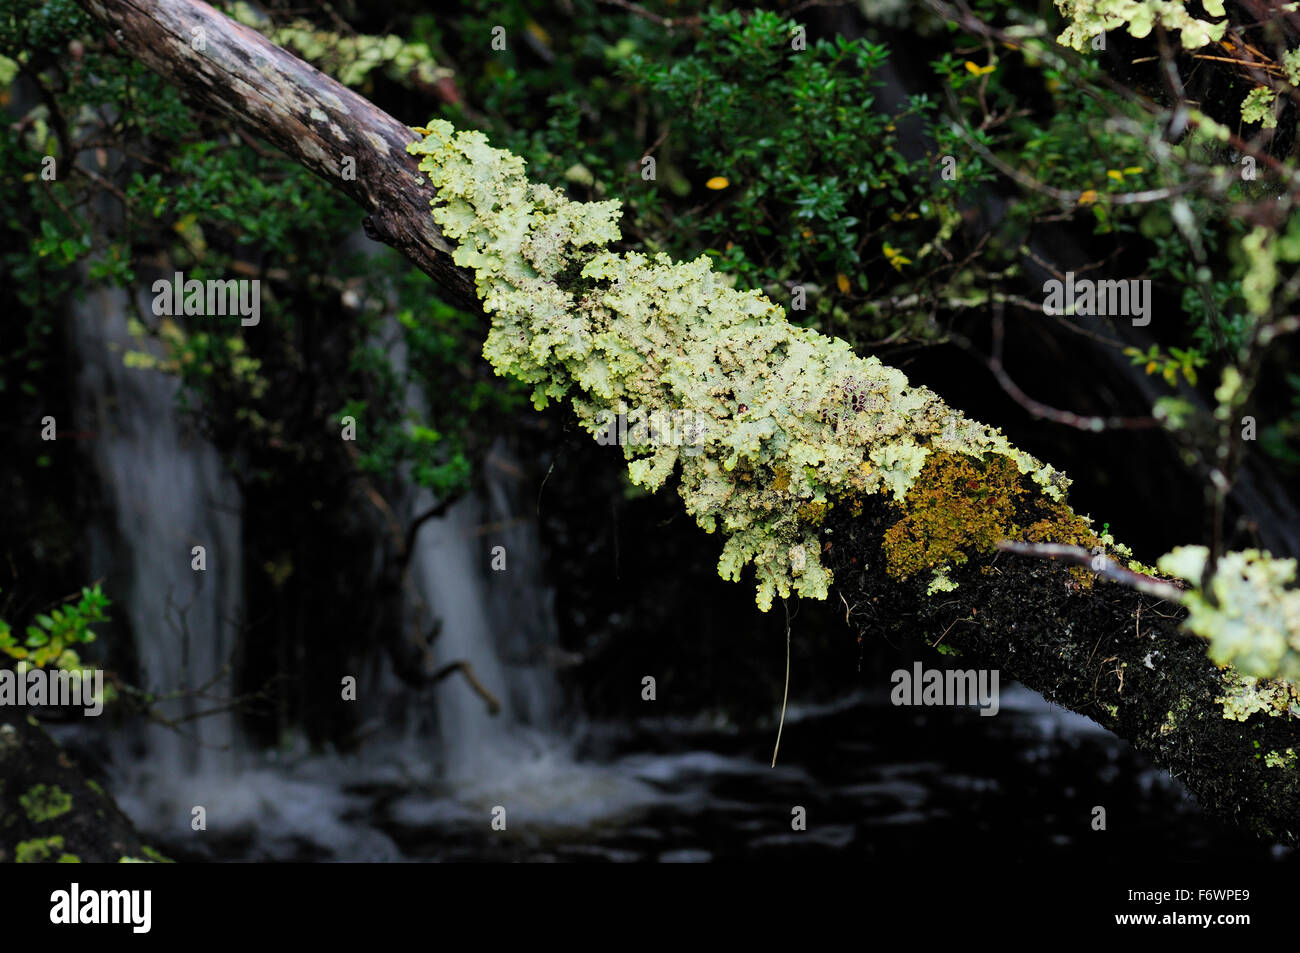 Moss-grown branch in the rainforest, Caleta Escandallo, Tierra del Fuego, Chile Stock Photo